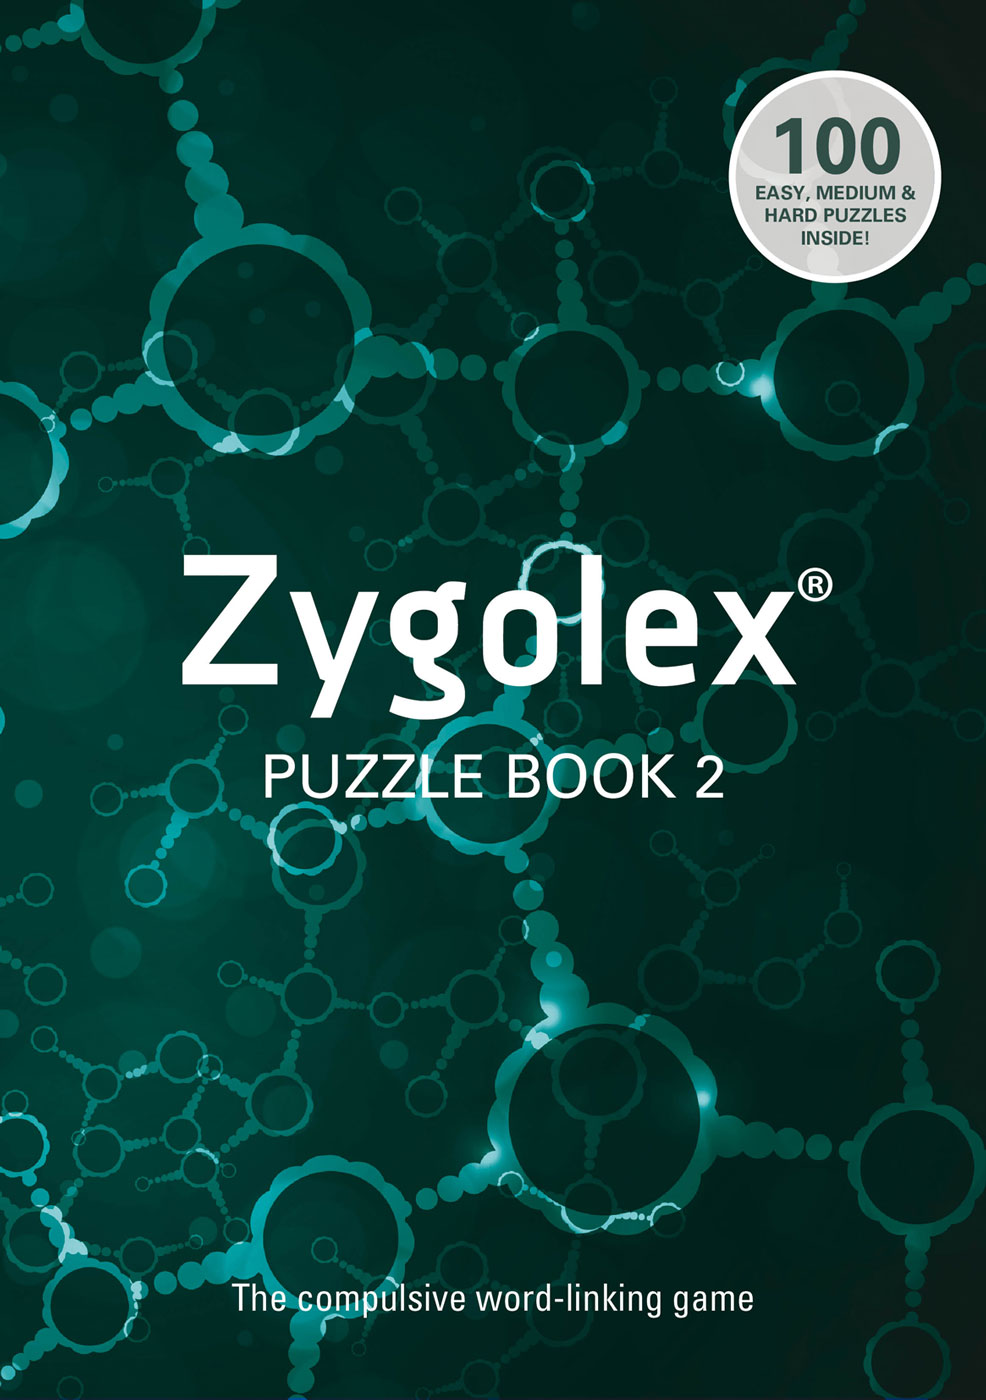 Zygolex book 2